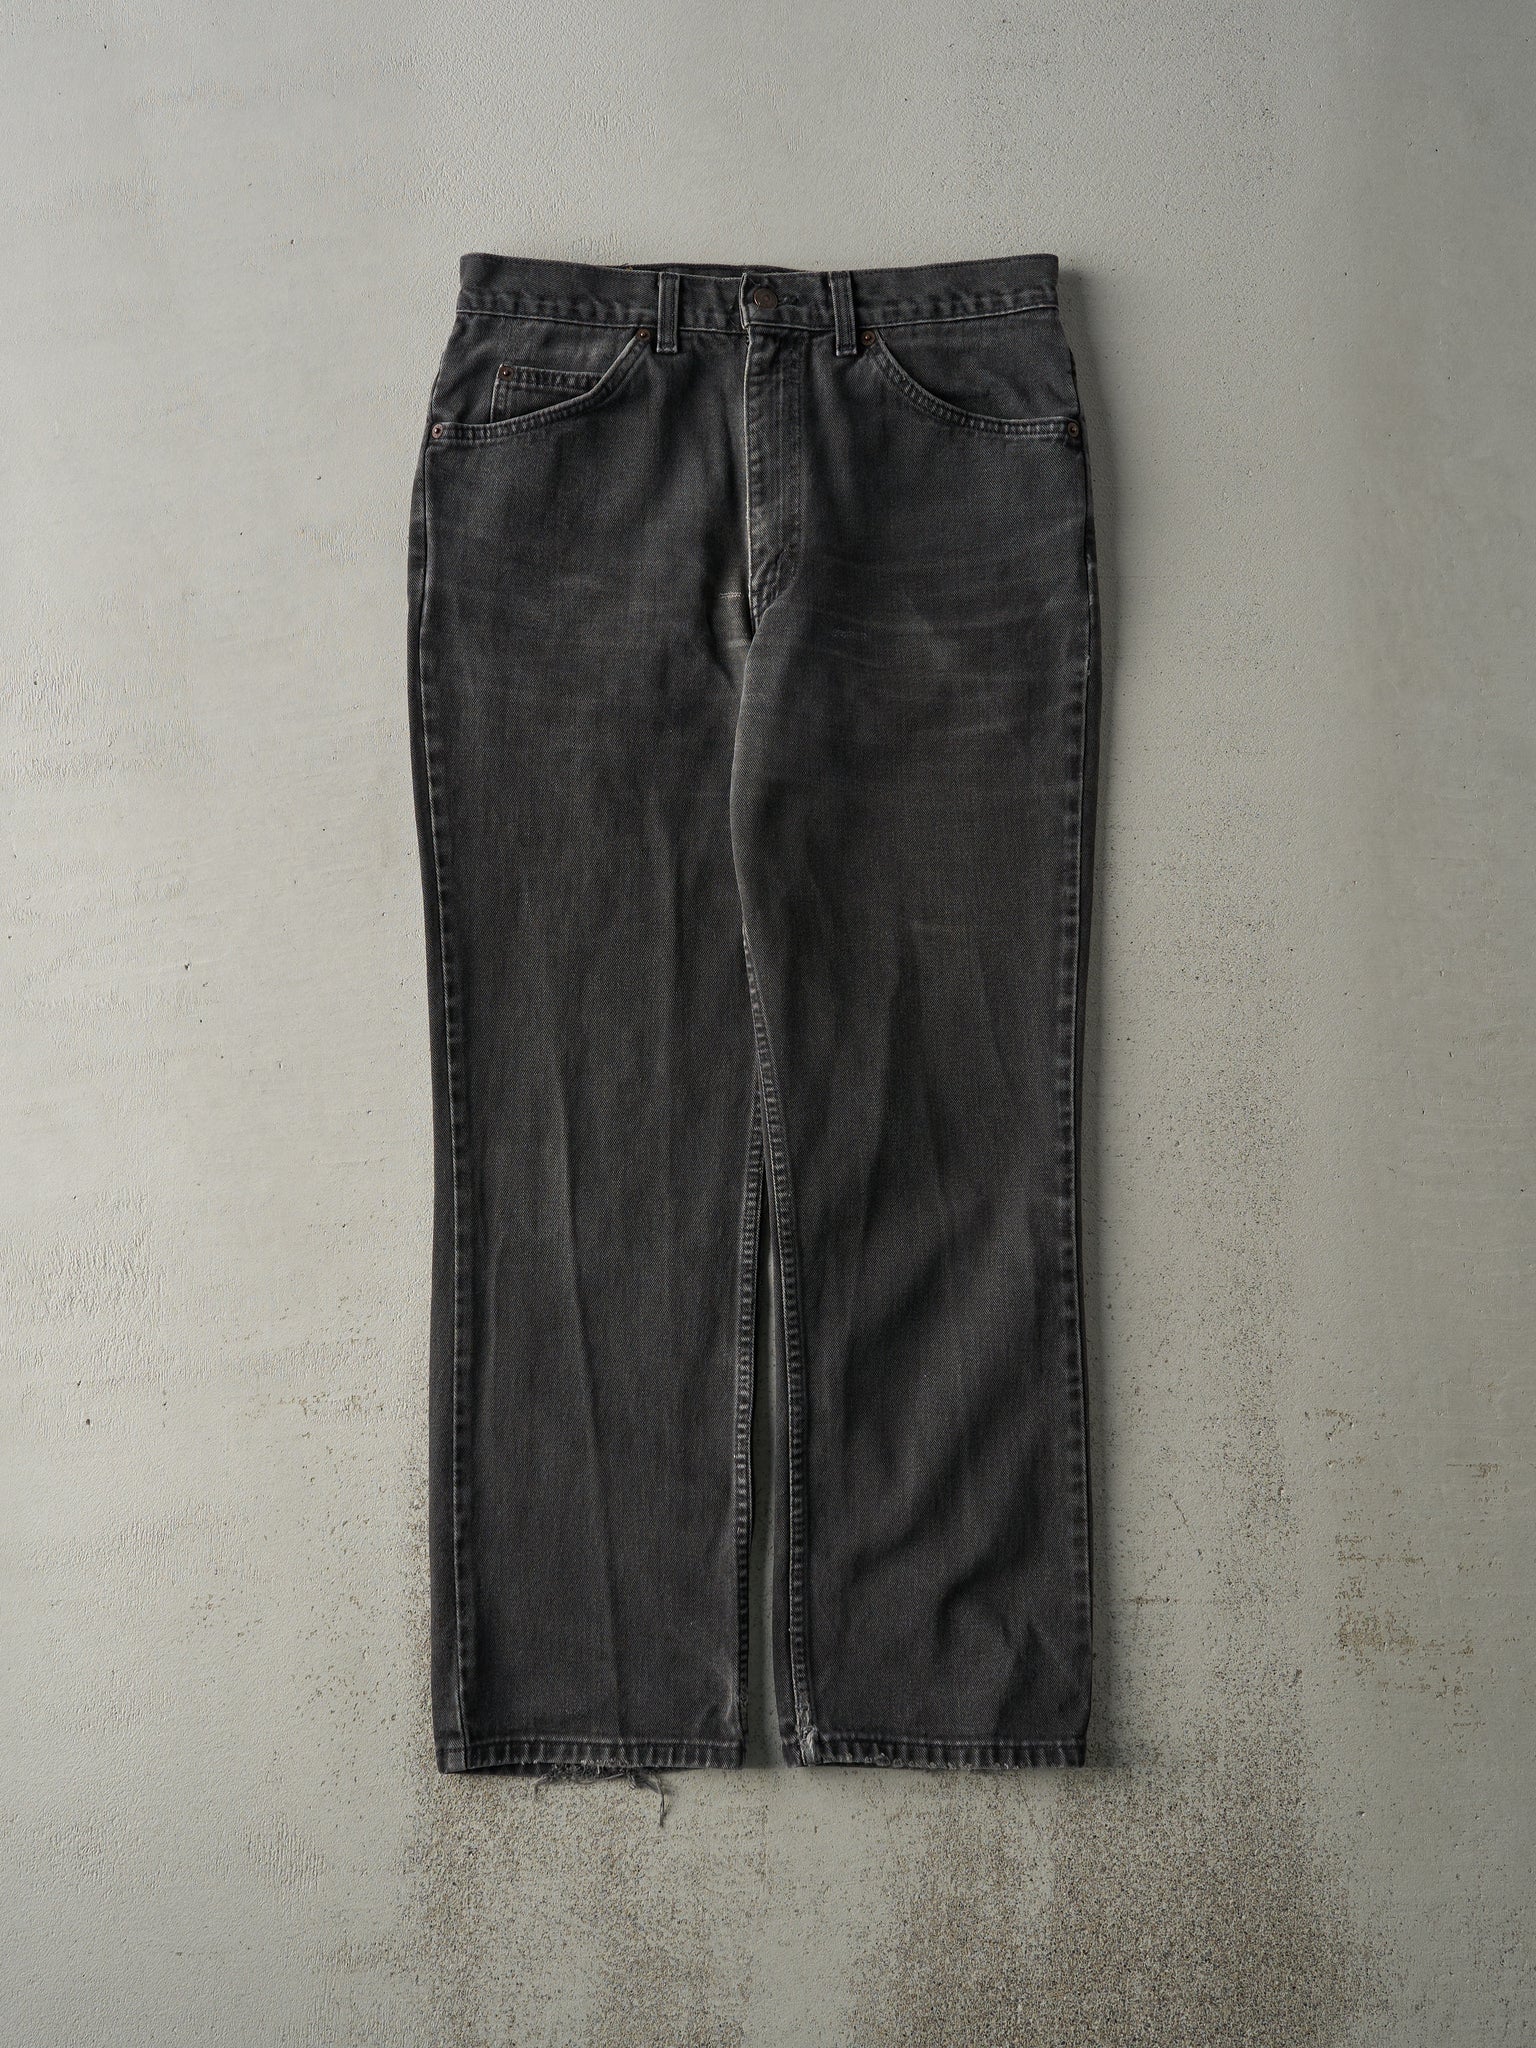 Vintage 90s Black Levi's Denim Pants (32x29)